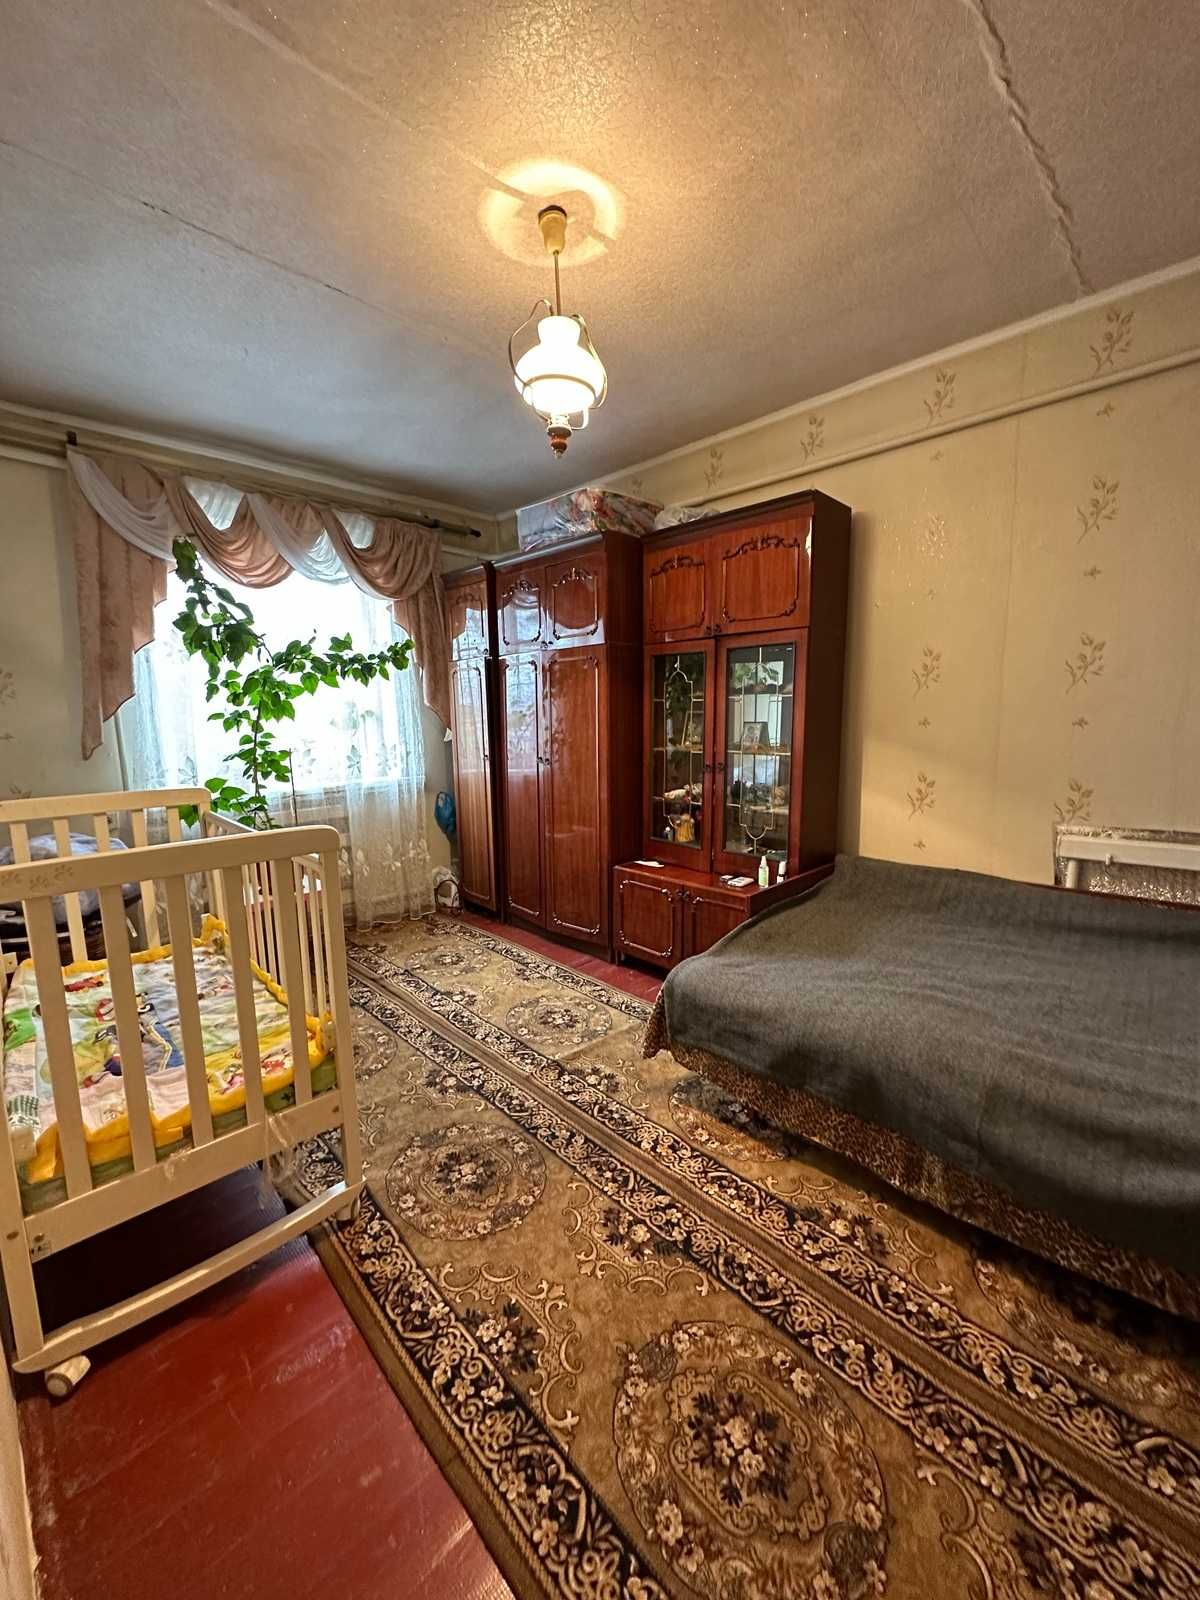 Продаж будинку за містом Бородянка.